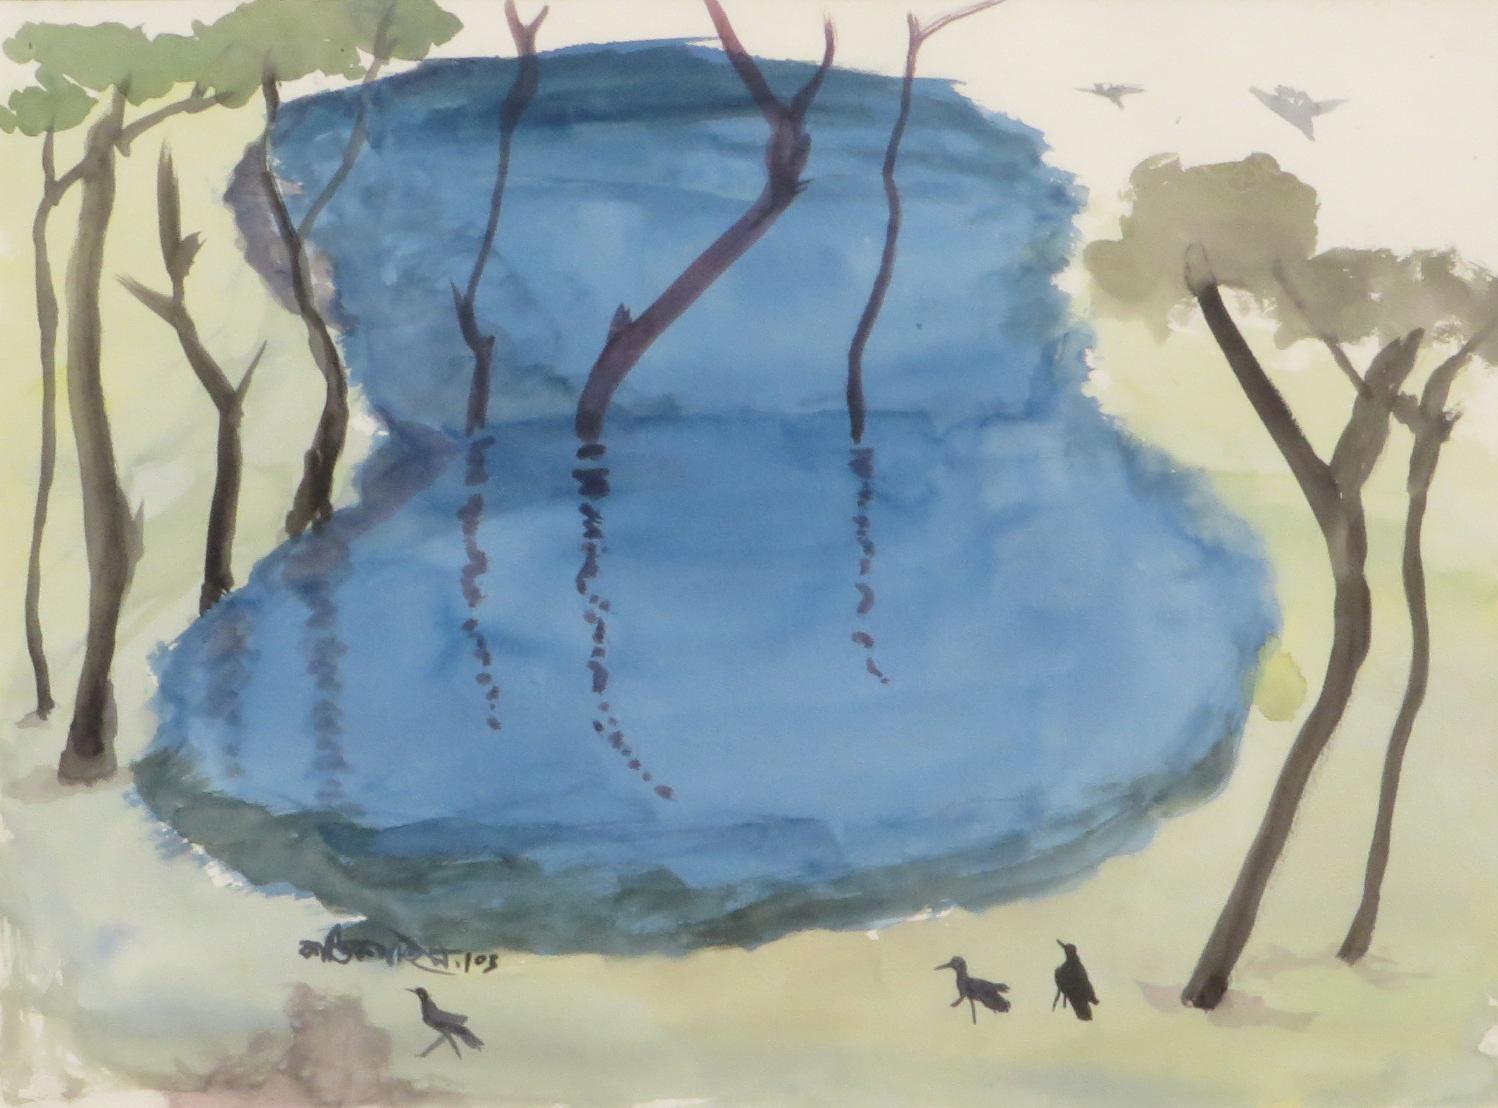 Paysage, arbres, étang, aquarelle sur papier, bleu, vert, marron, couleurs « en stock » - Painting de Kartick Chandra Pyne